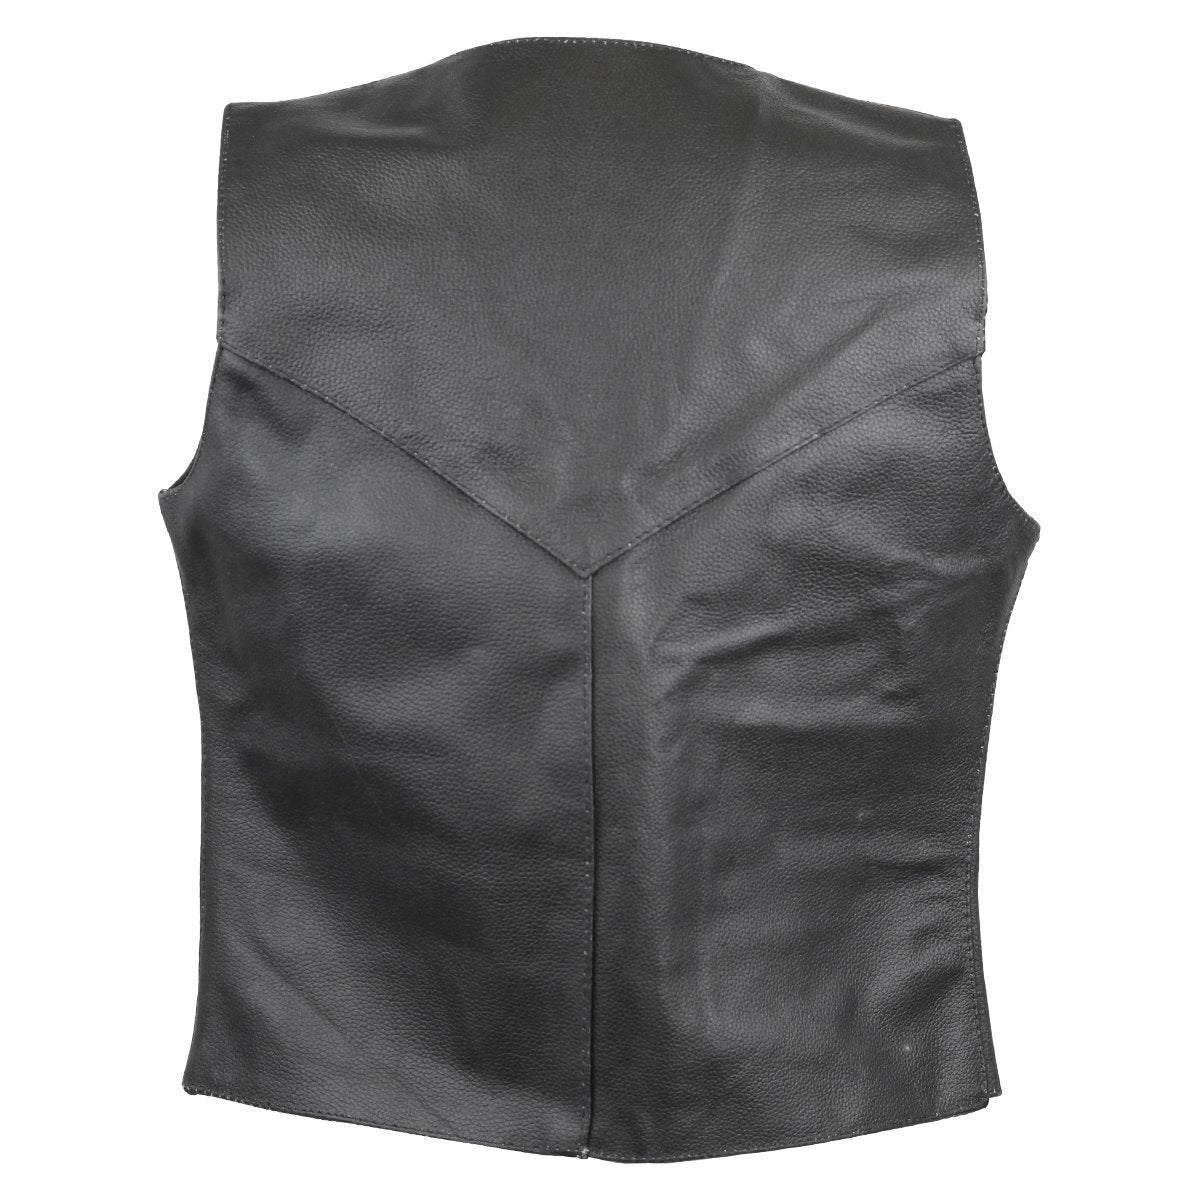 Vance Ladies Milled Leather Plain Side Vest